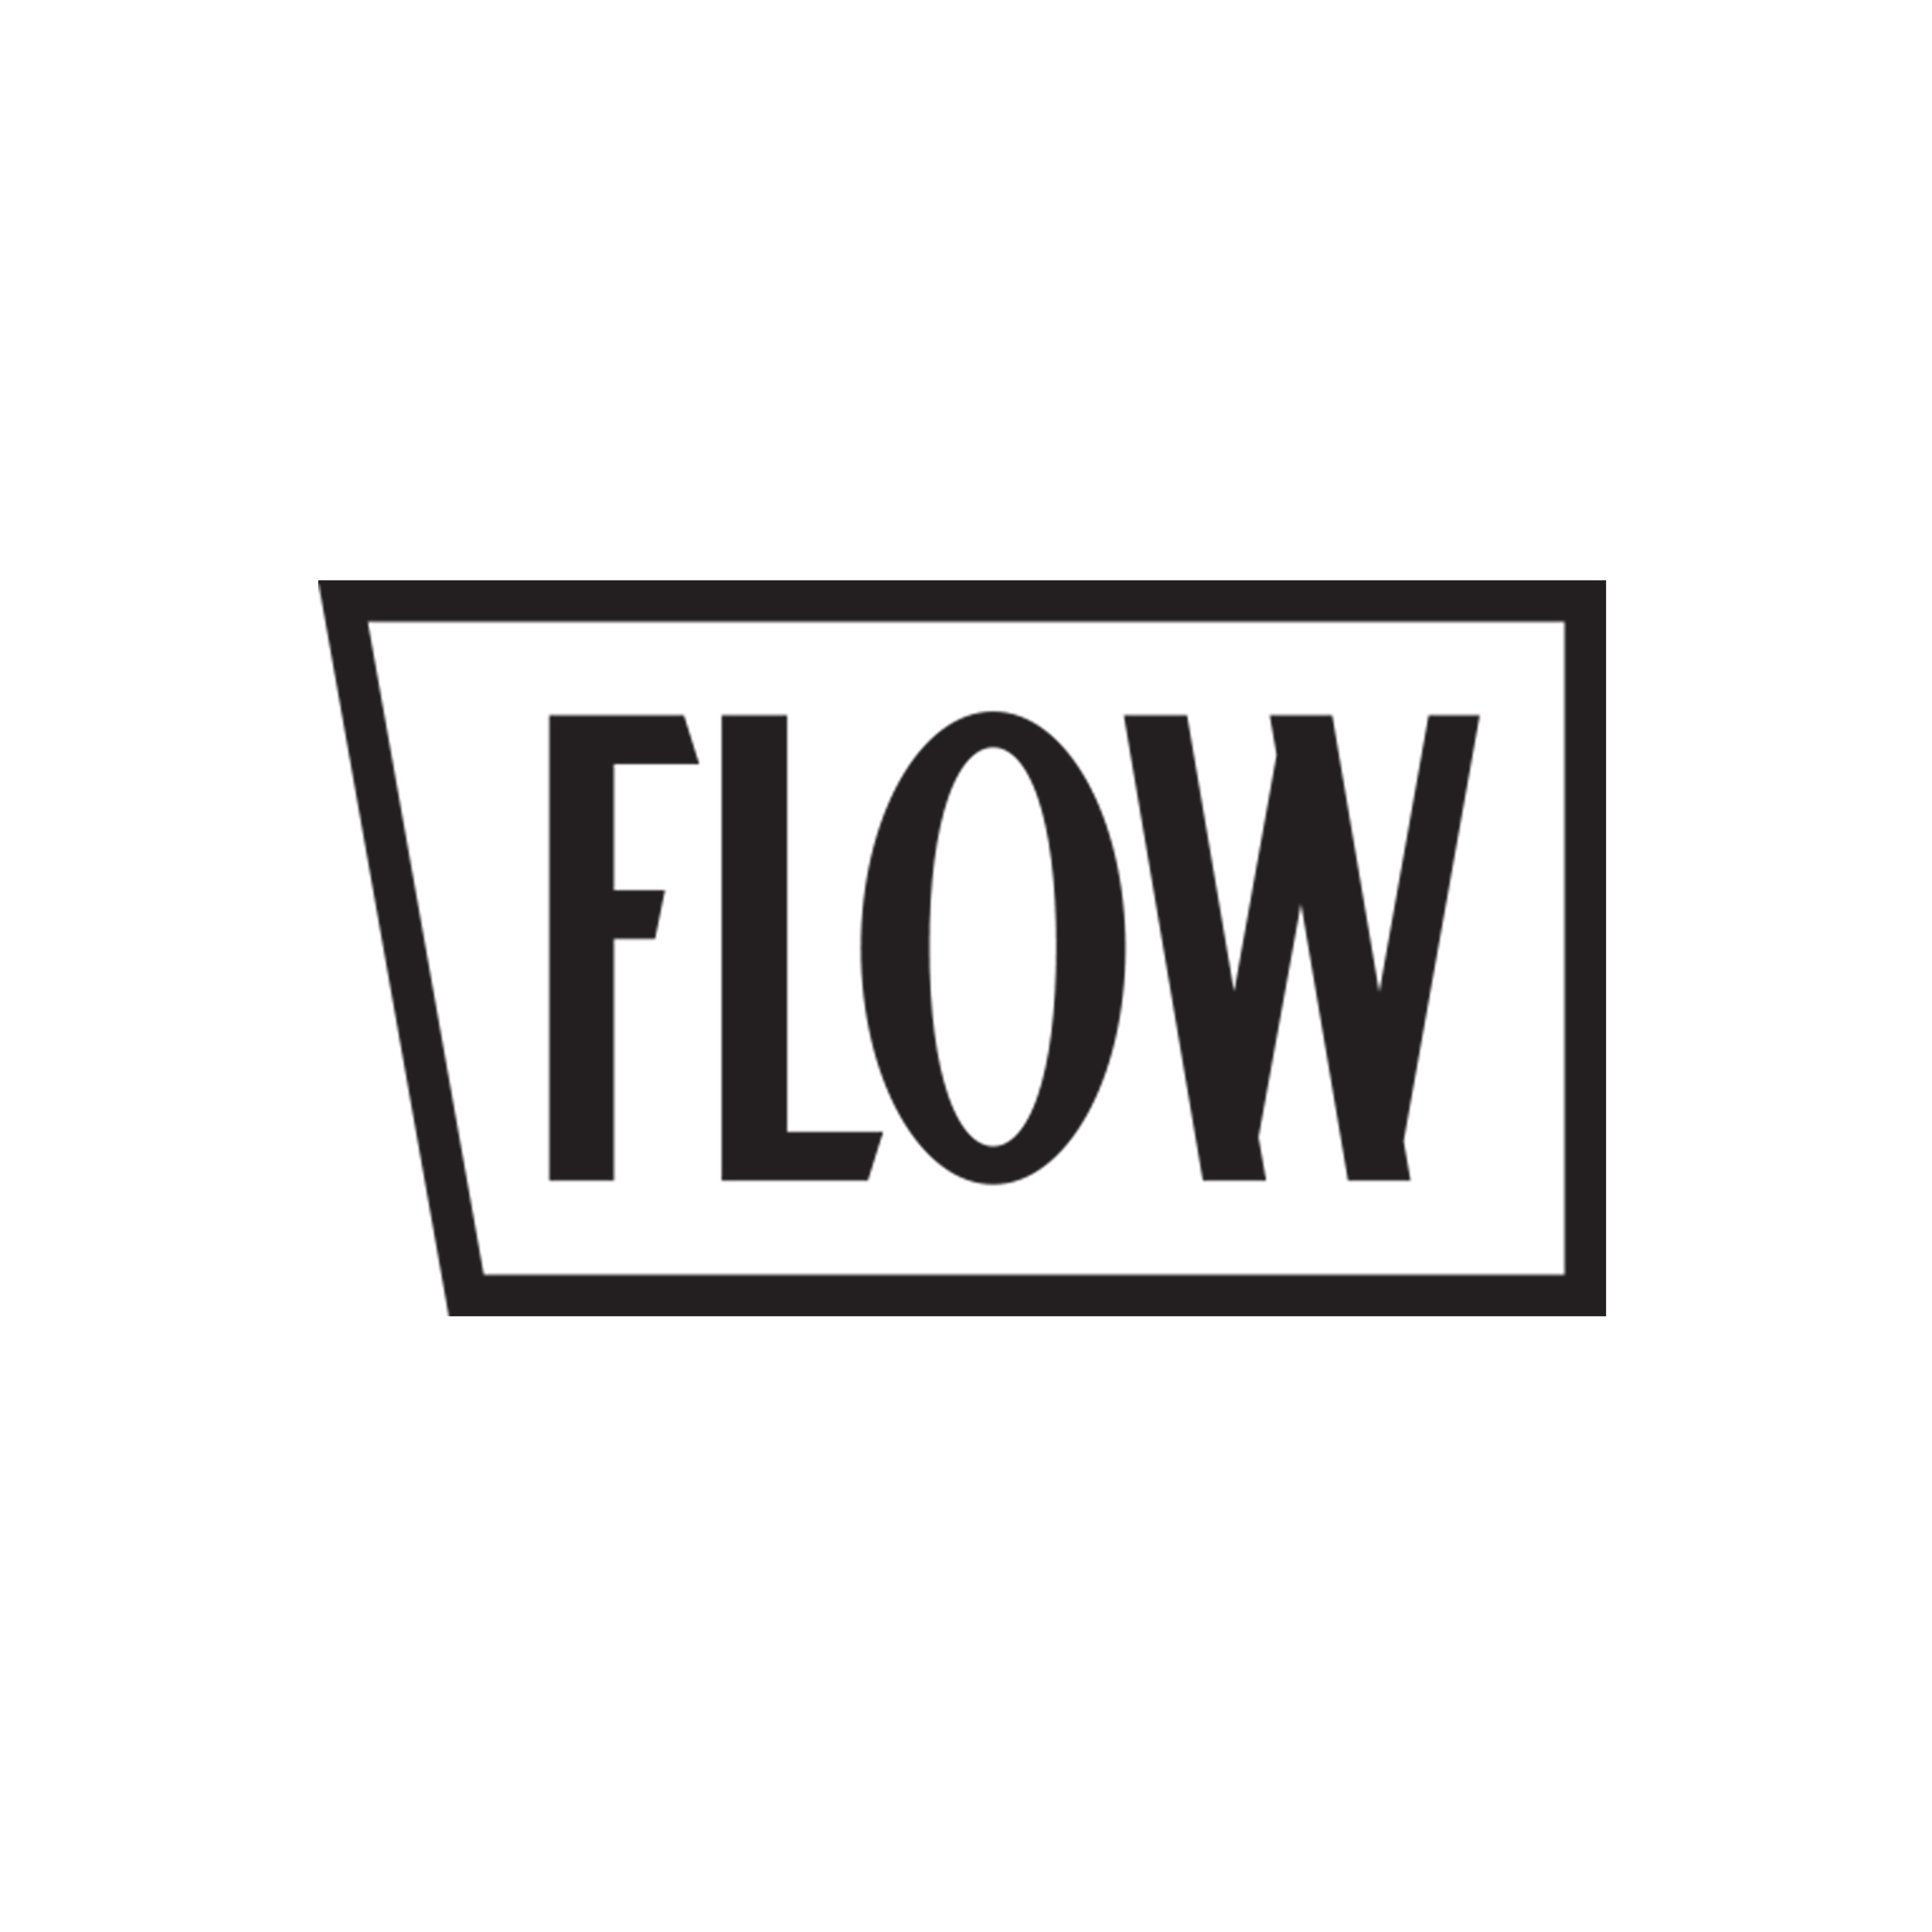 Theflow. Flow. Flow лого. Flou логотип. Flow ава.